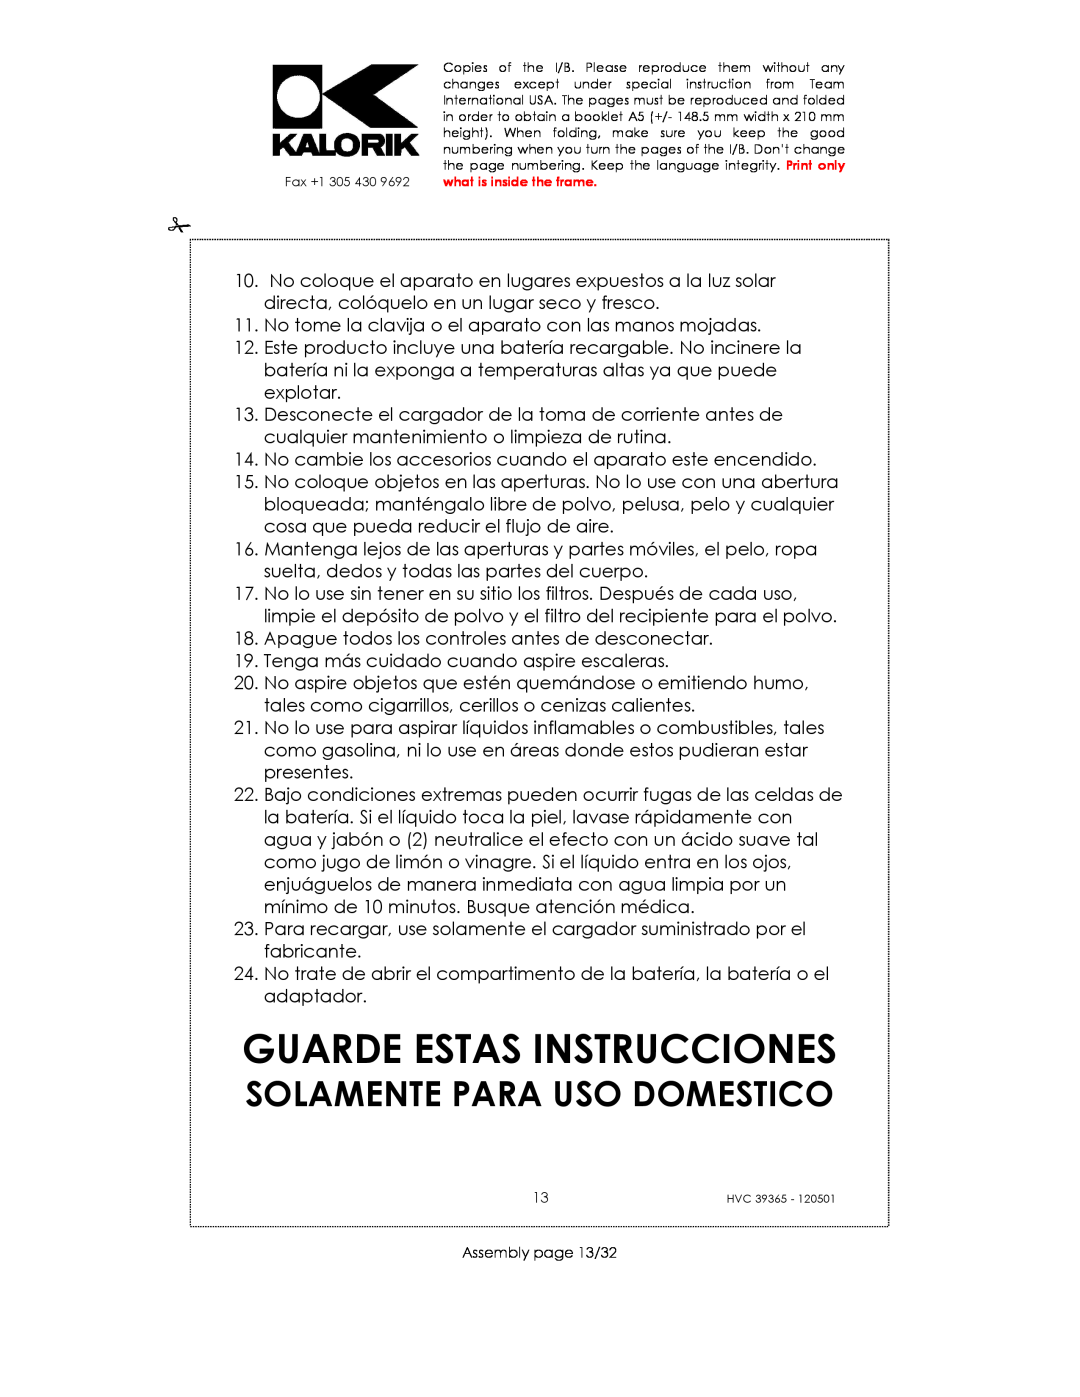 Kalorik HVC 39365 manual Guarde Estas Instrucciones, Solamente Para Uso Domestico 